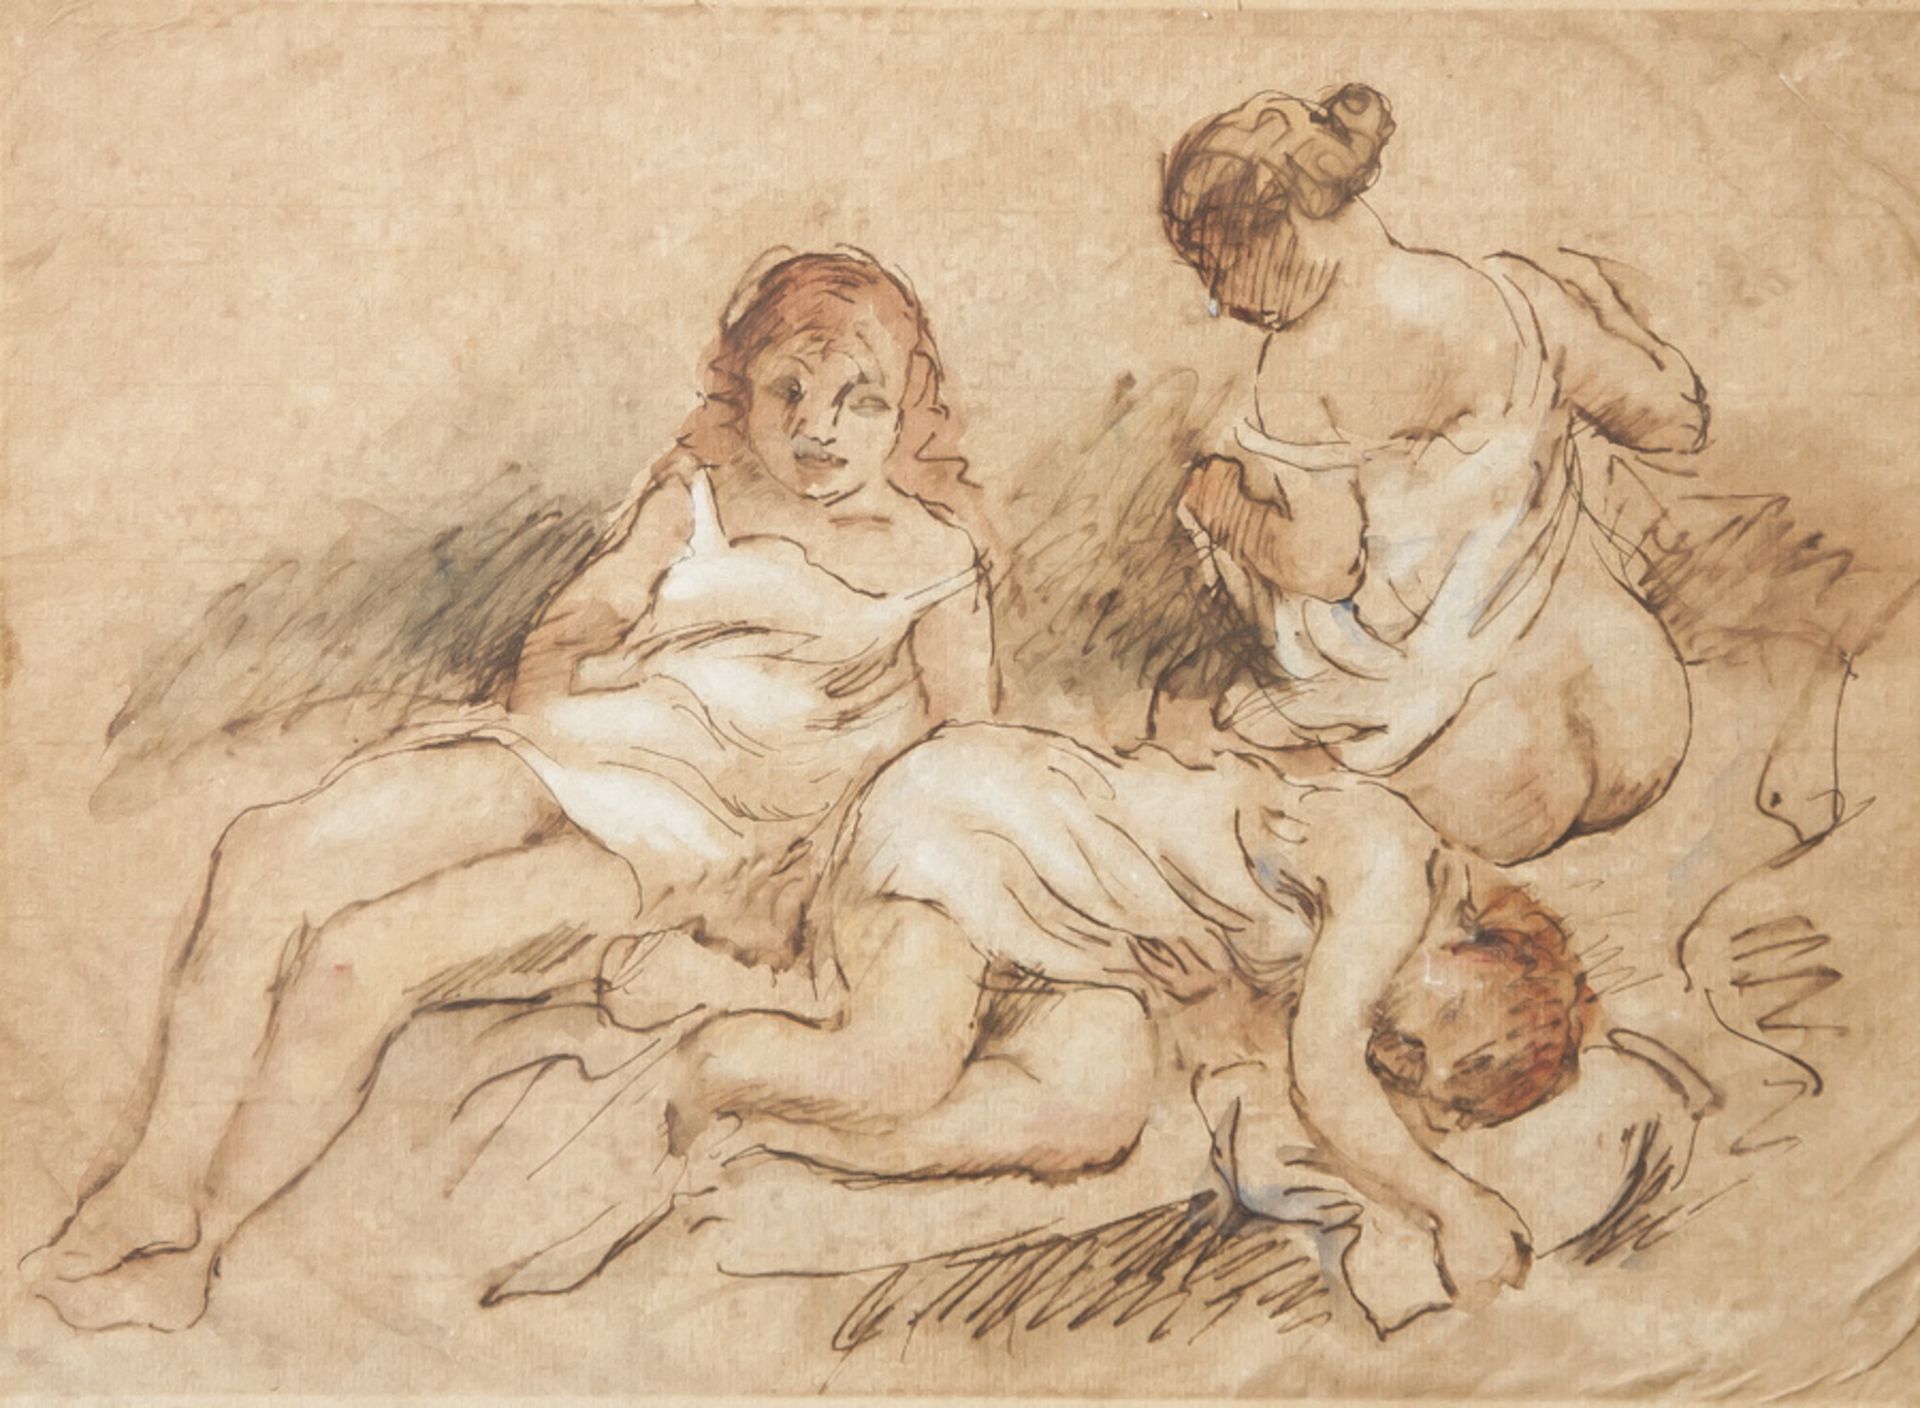 Wohl Pascin, Jules (1885-1930), drei leicht bekleidete Mädchen, Zeichnung, Aquarell,Tinte, Papier,